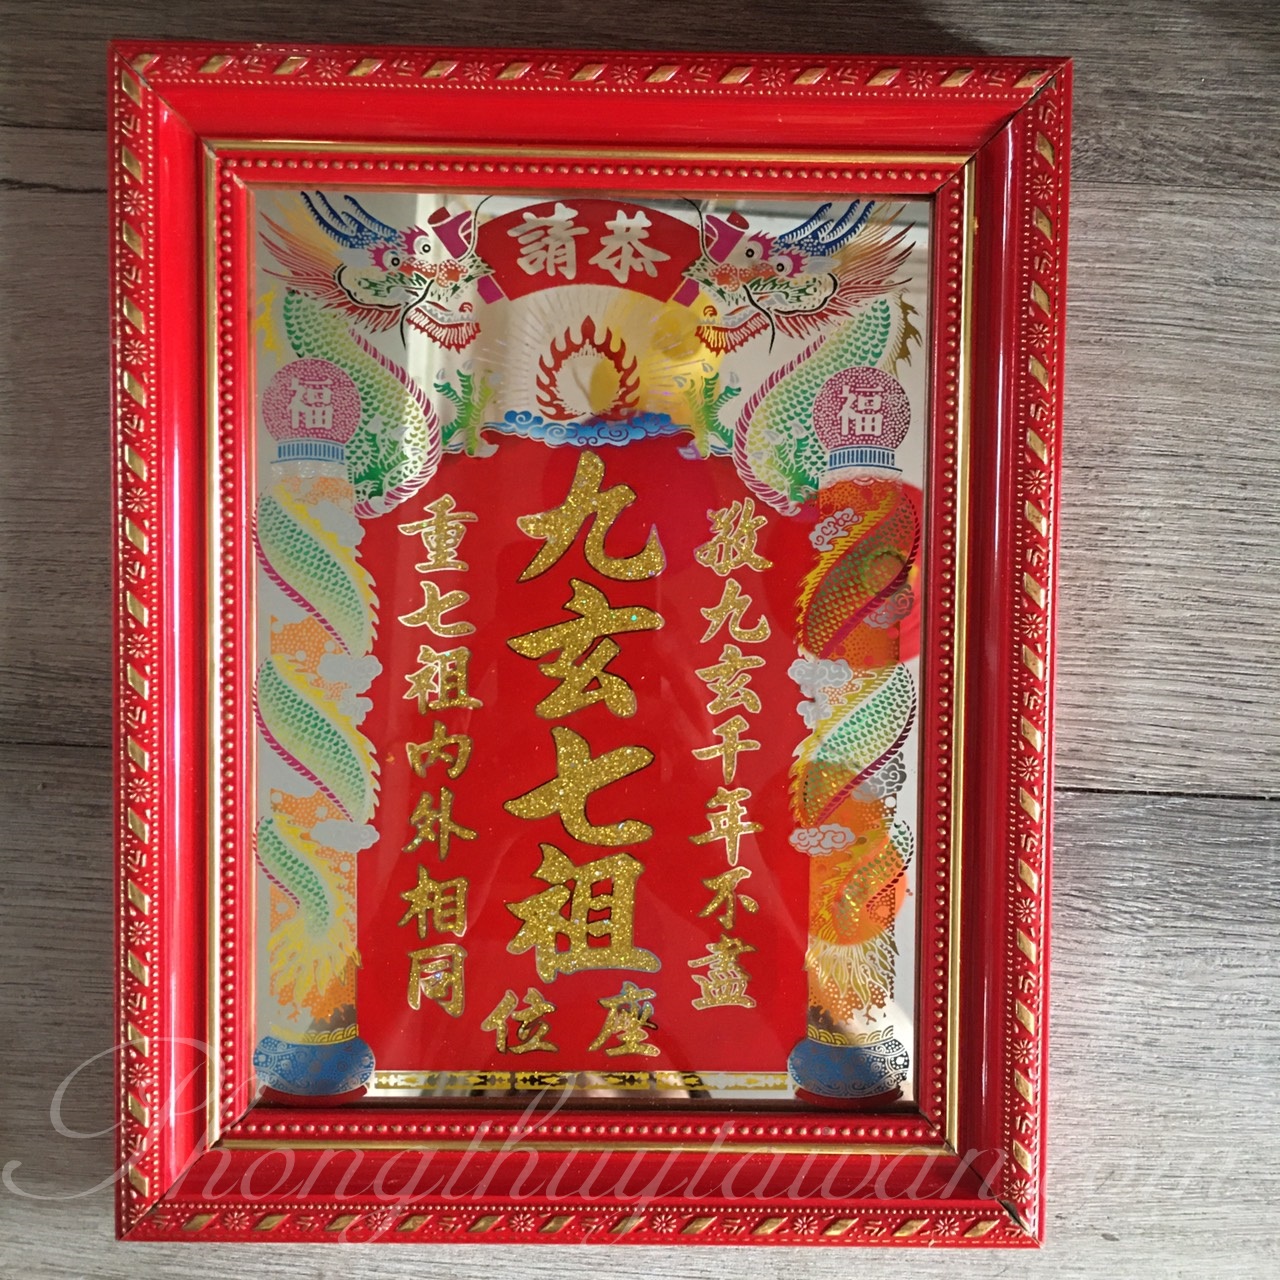 Bài vị Cửu Huyền Thất Tổ chữ kim tuyến viền đỏ mẫu tiếng Hán (3 Size)(tặng kèm bột ngũ vị bao sái)